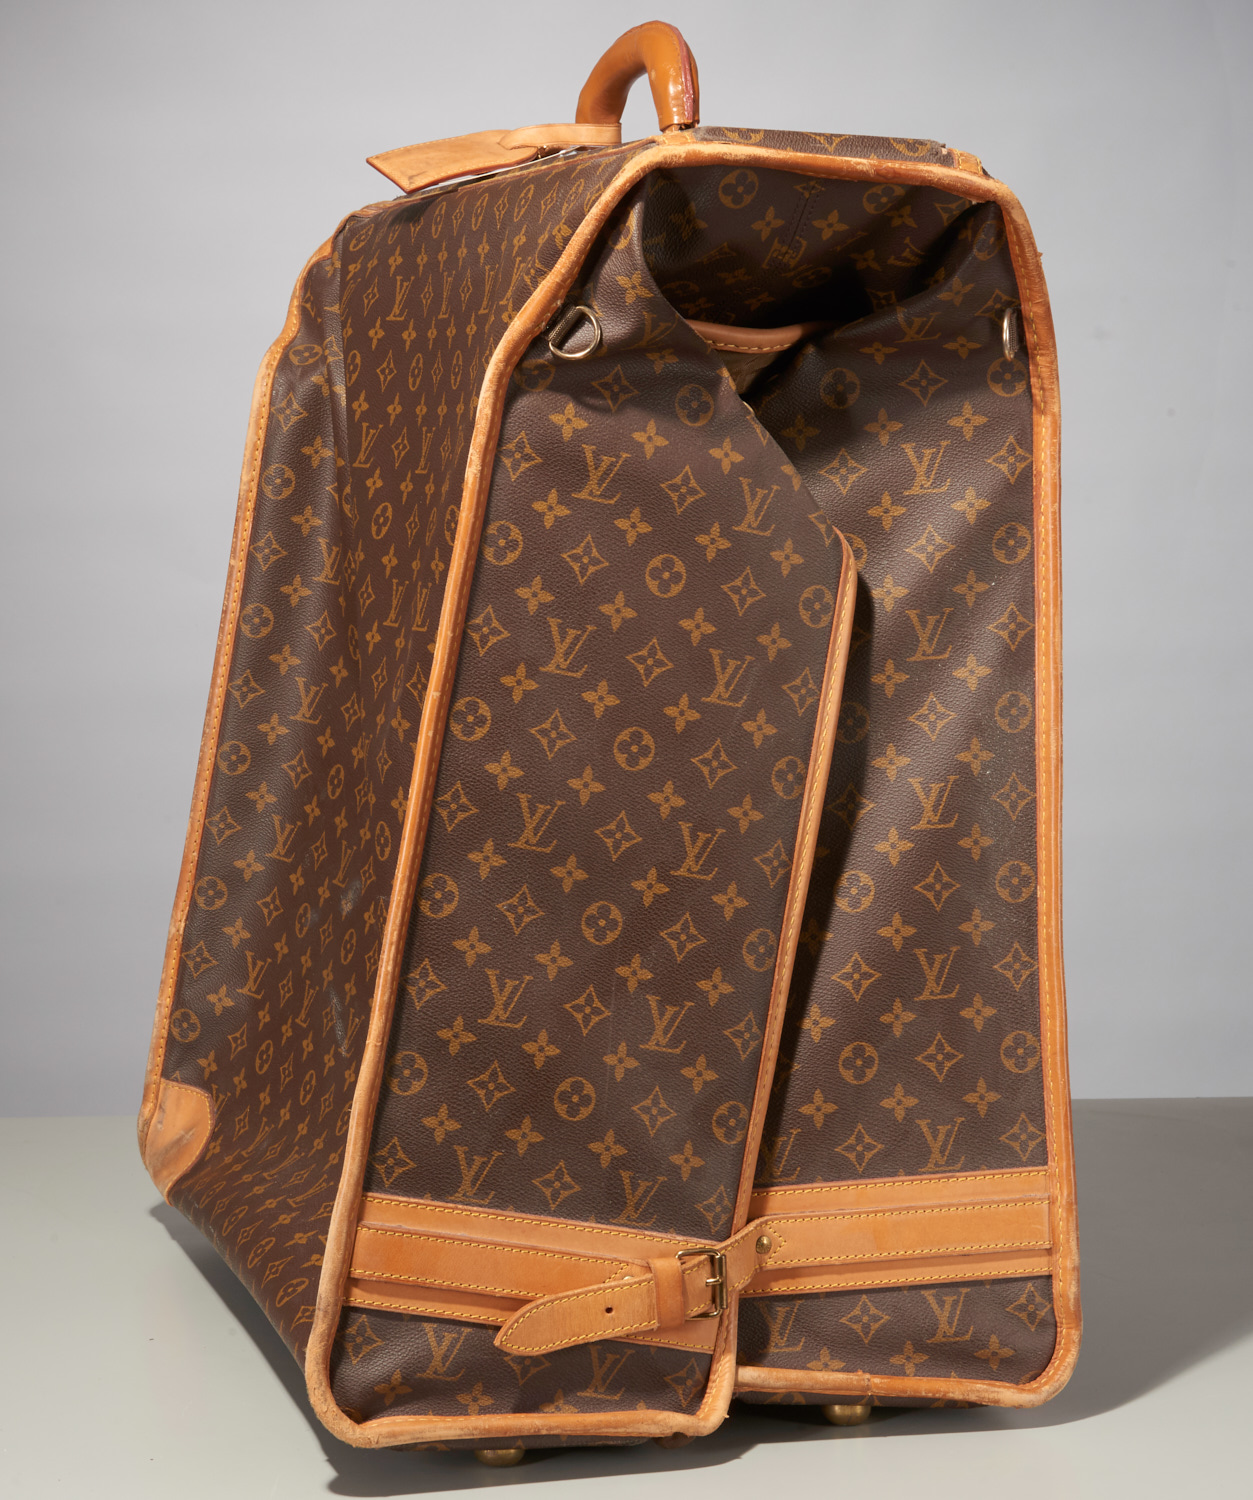 Sold at Auction: Louis Vuitton Large Vintage Authentic Garment Bag